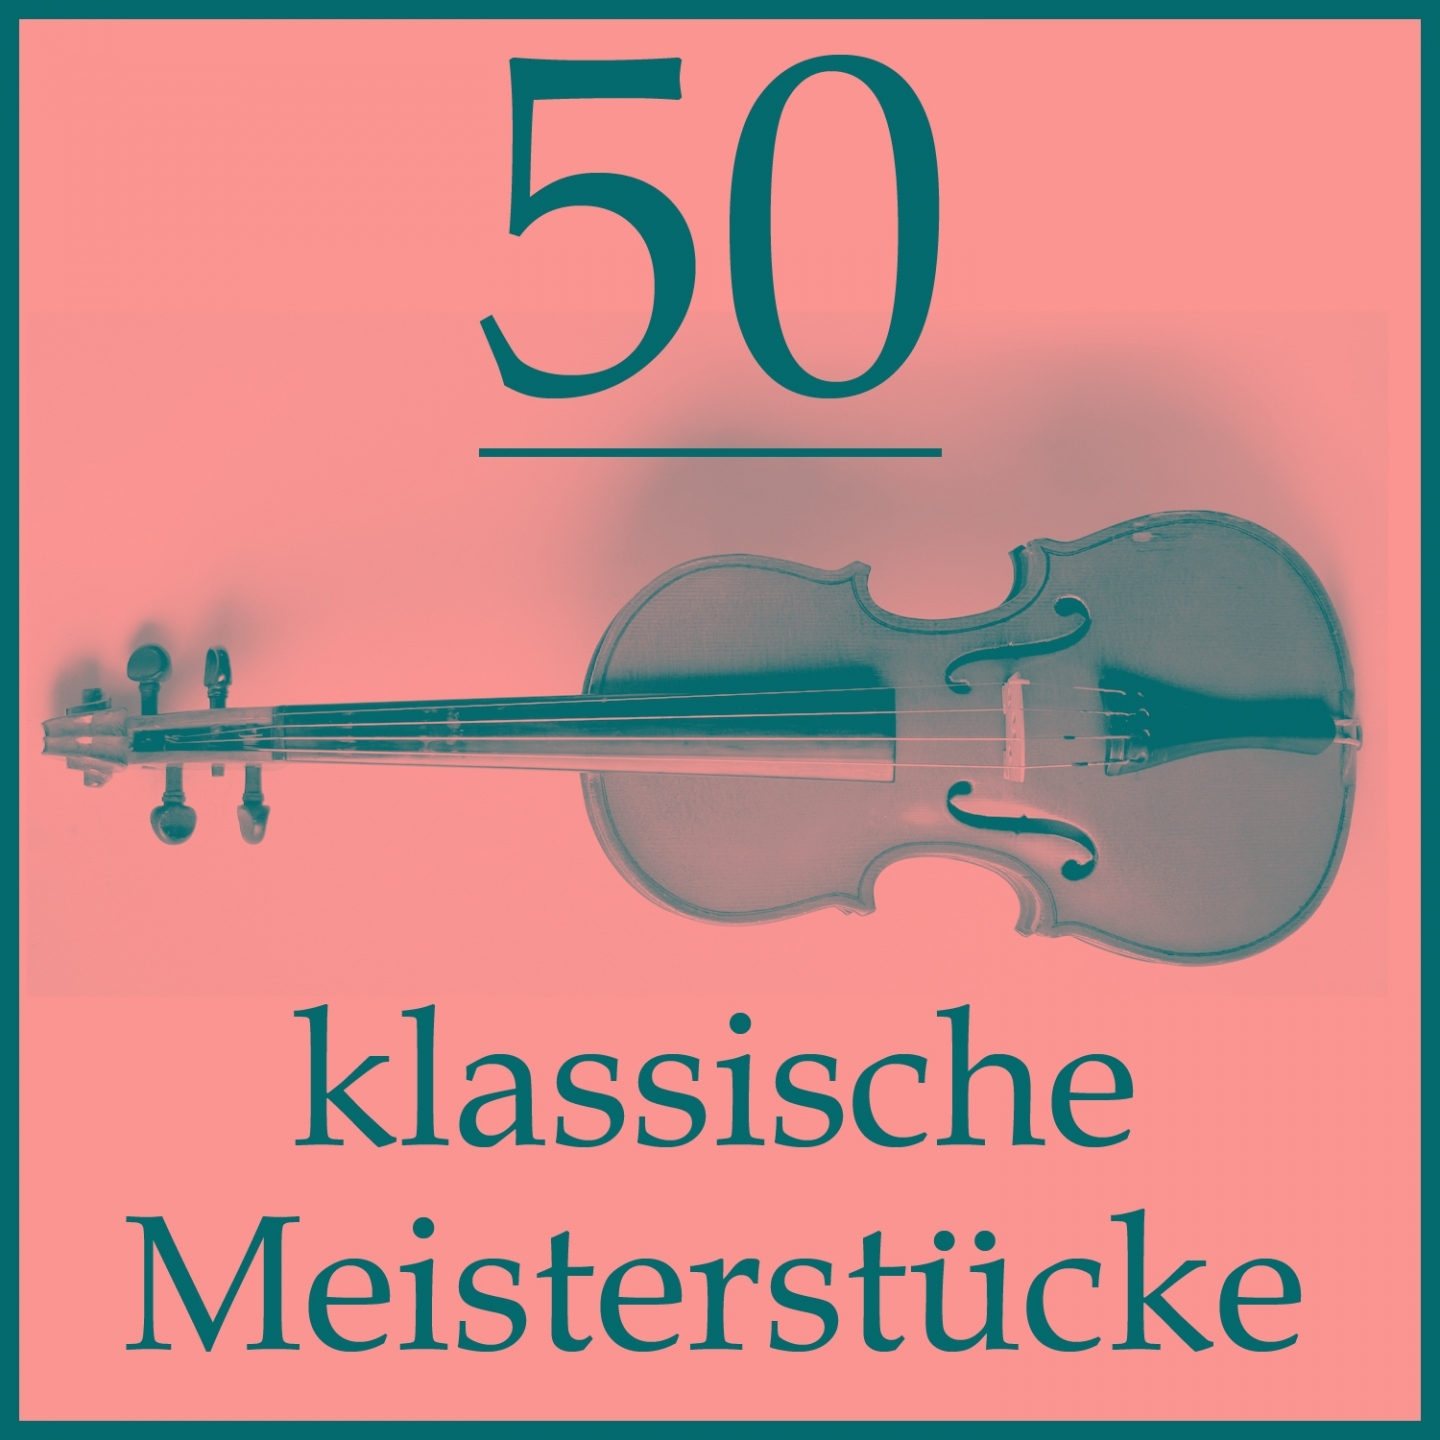 50 klassische Meisterstü cke